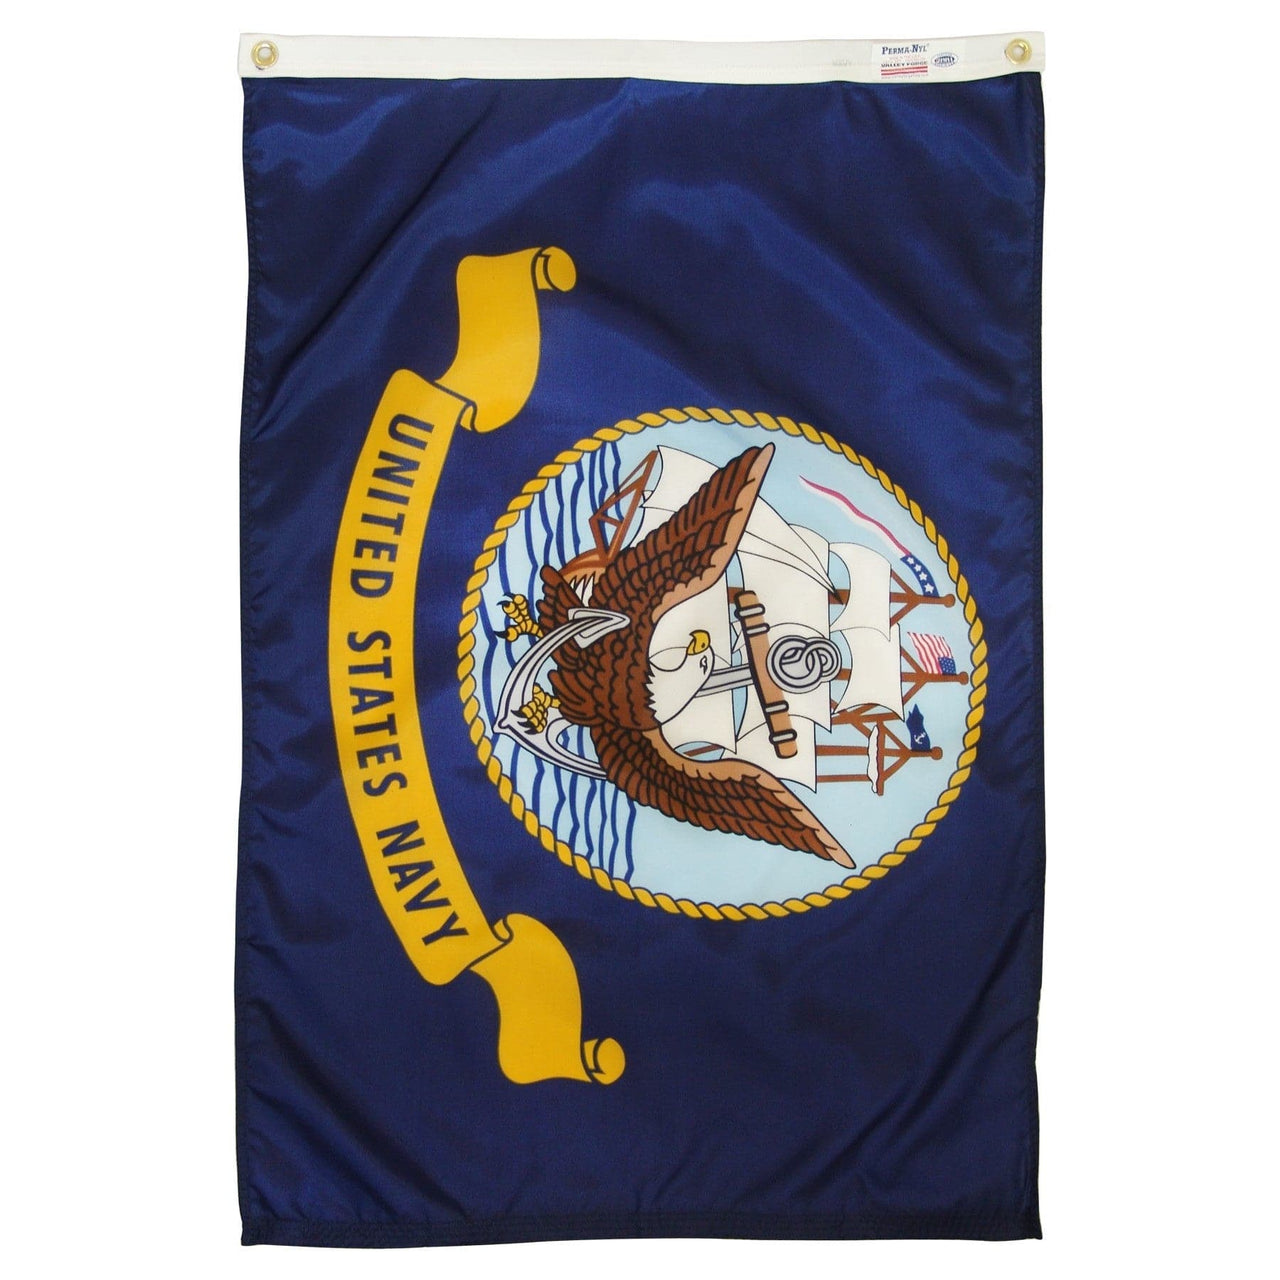 United States Navy Flag DURAFLIGHT